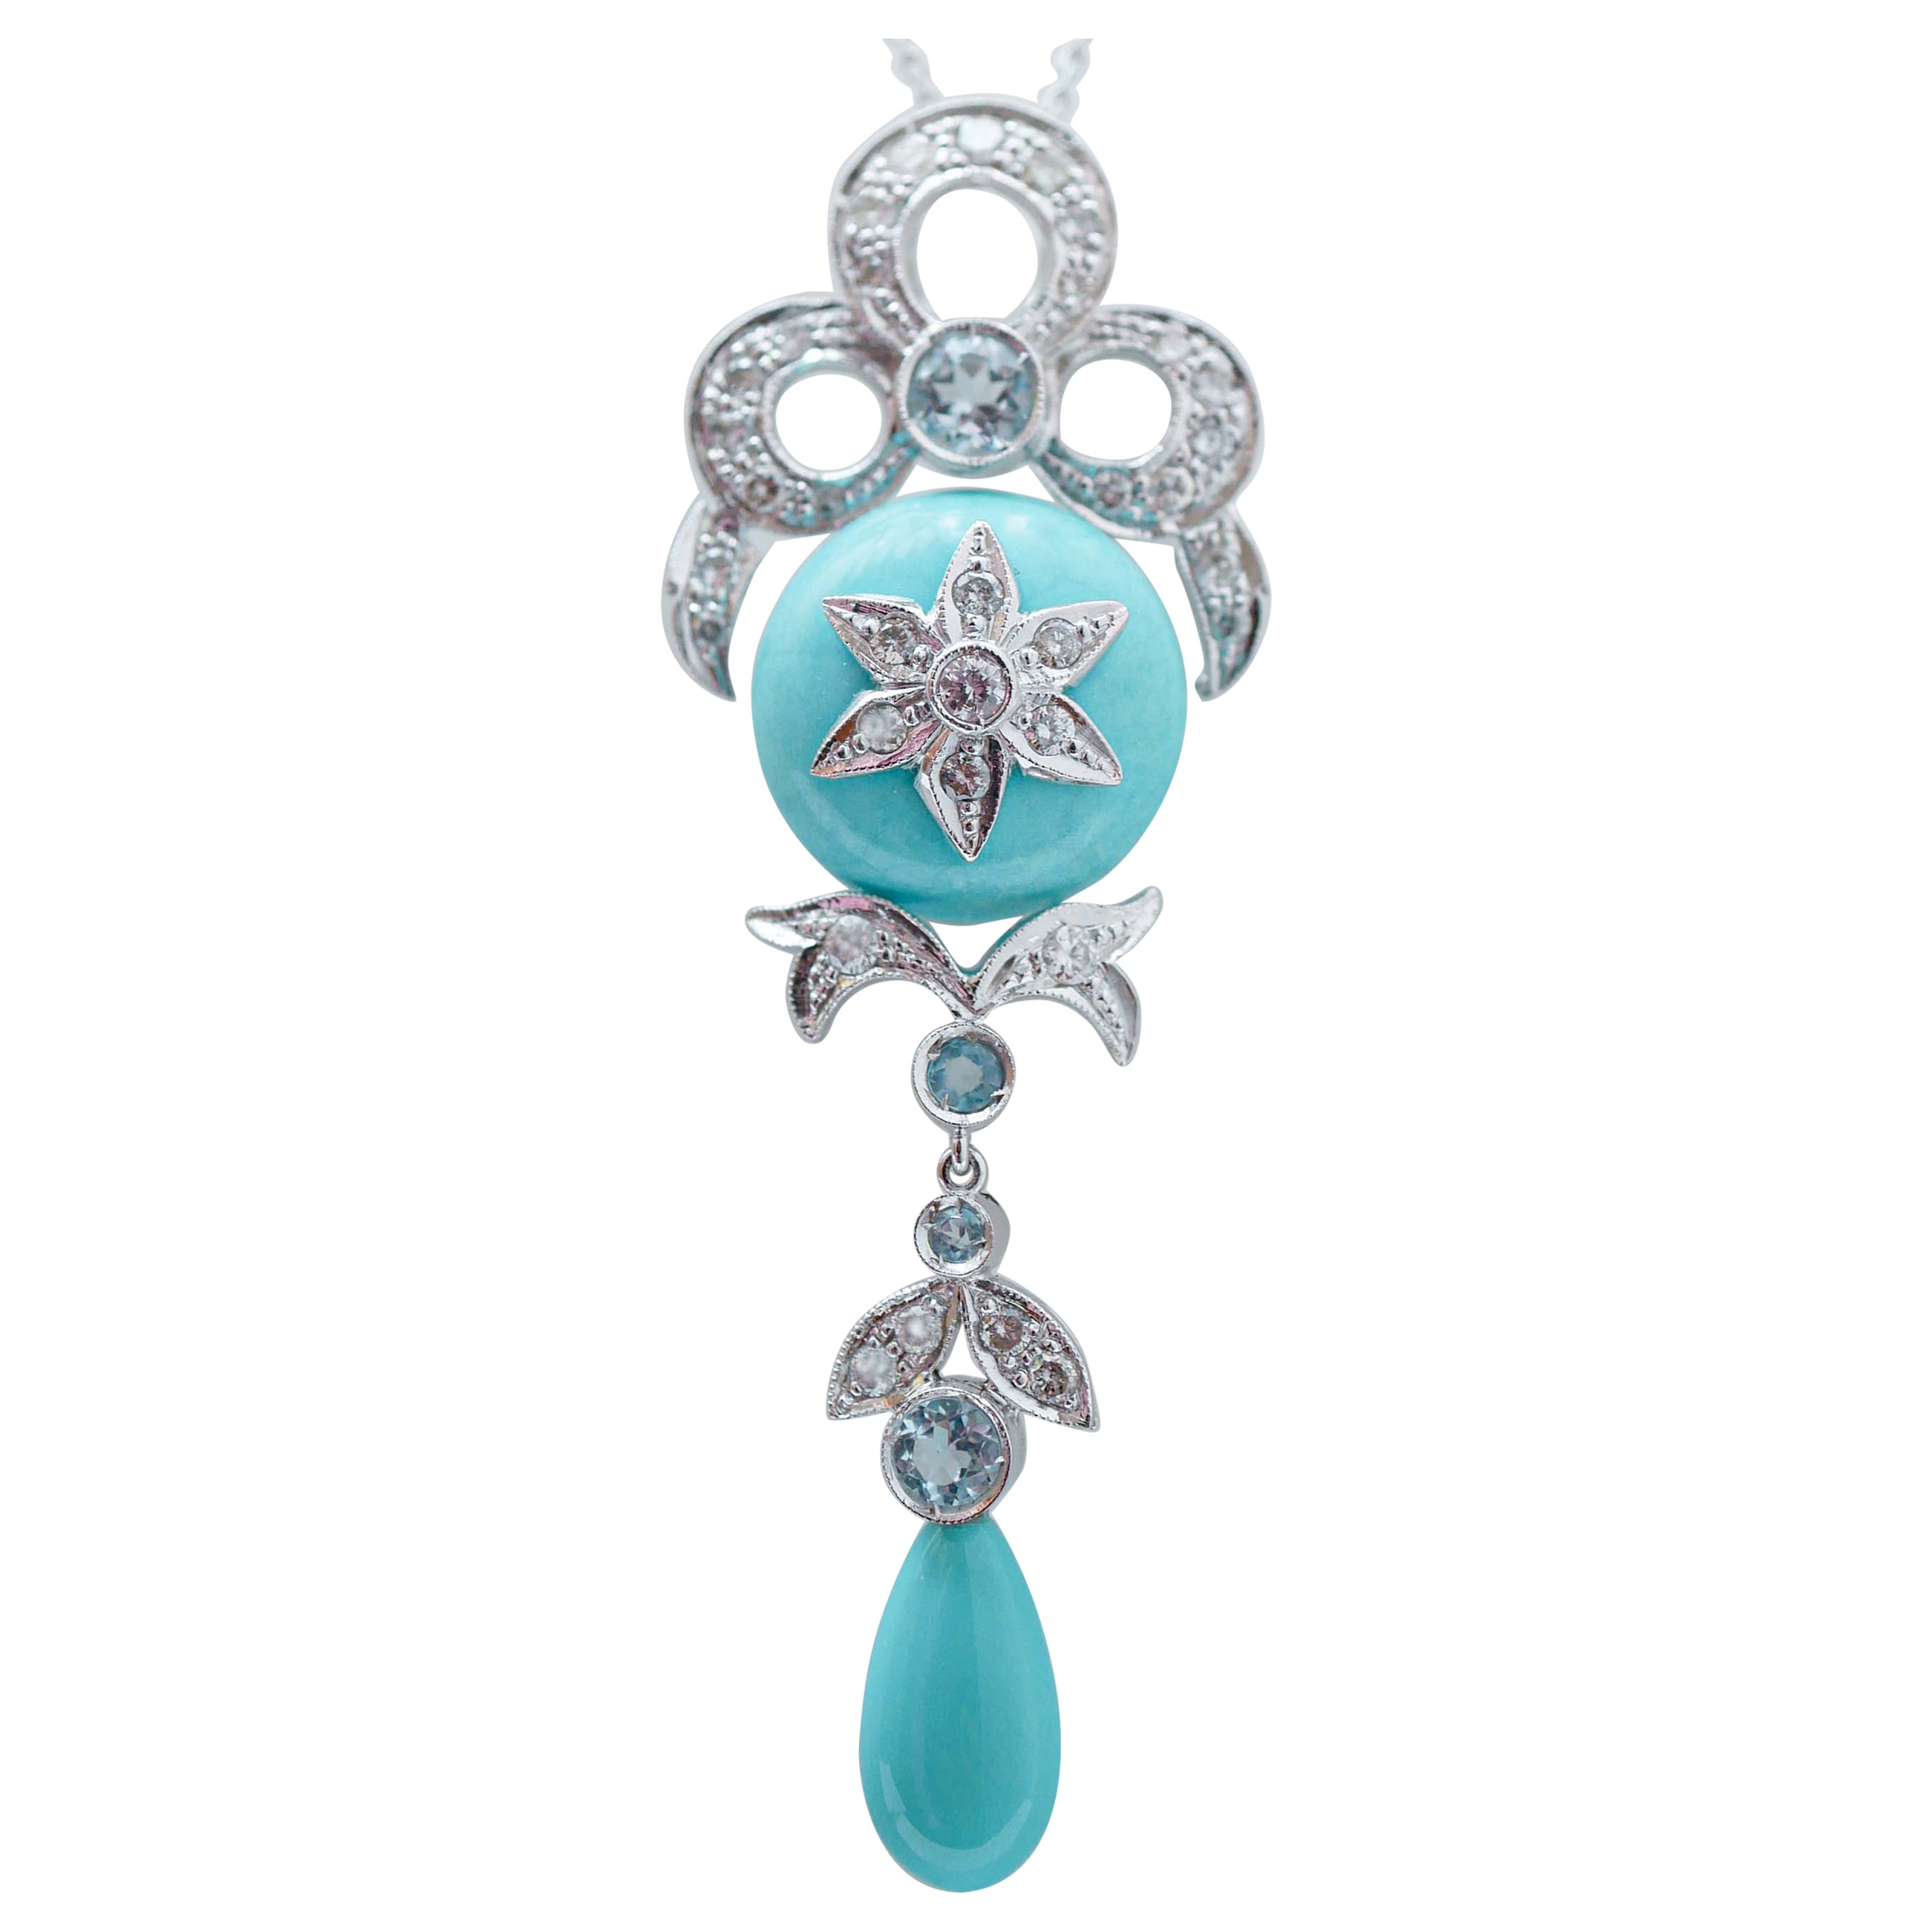 Turquoise, Aquamarine Colour Topazs, Diamonds, Platinum Pendant Necklace.